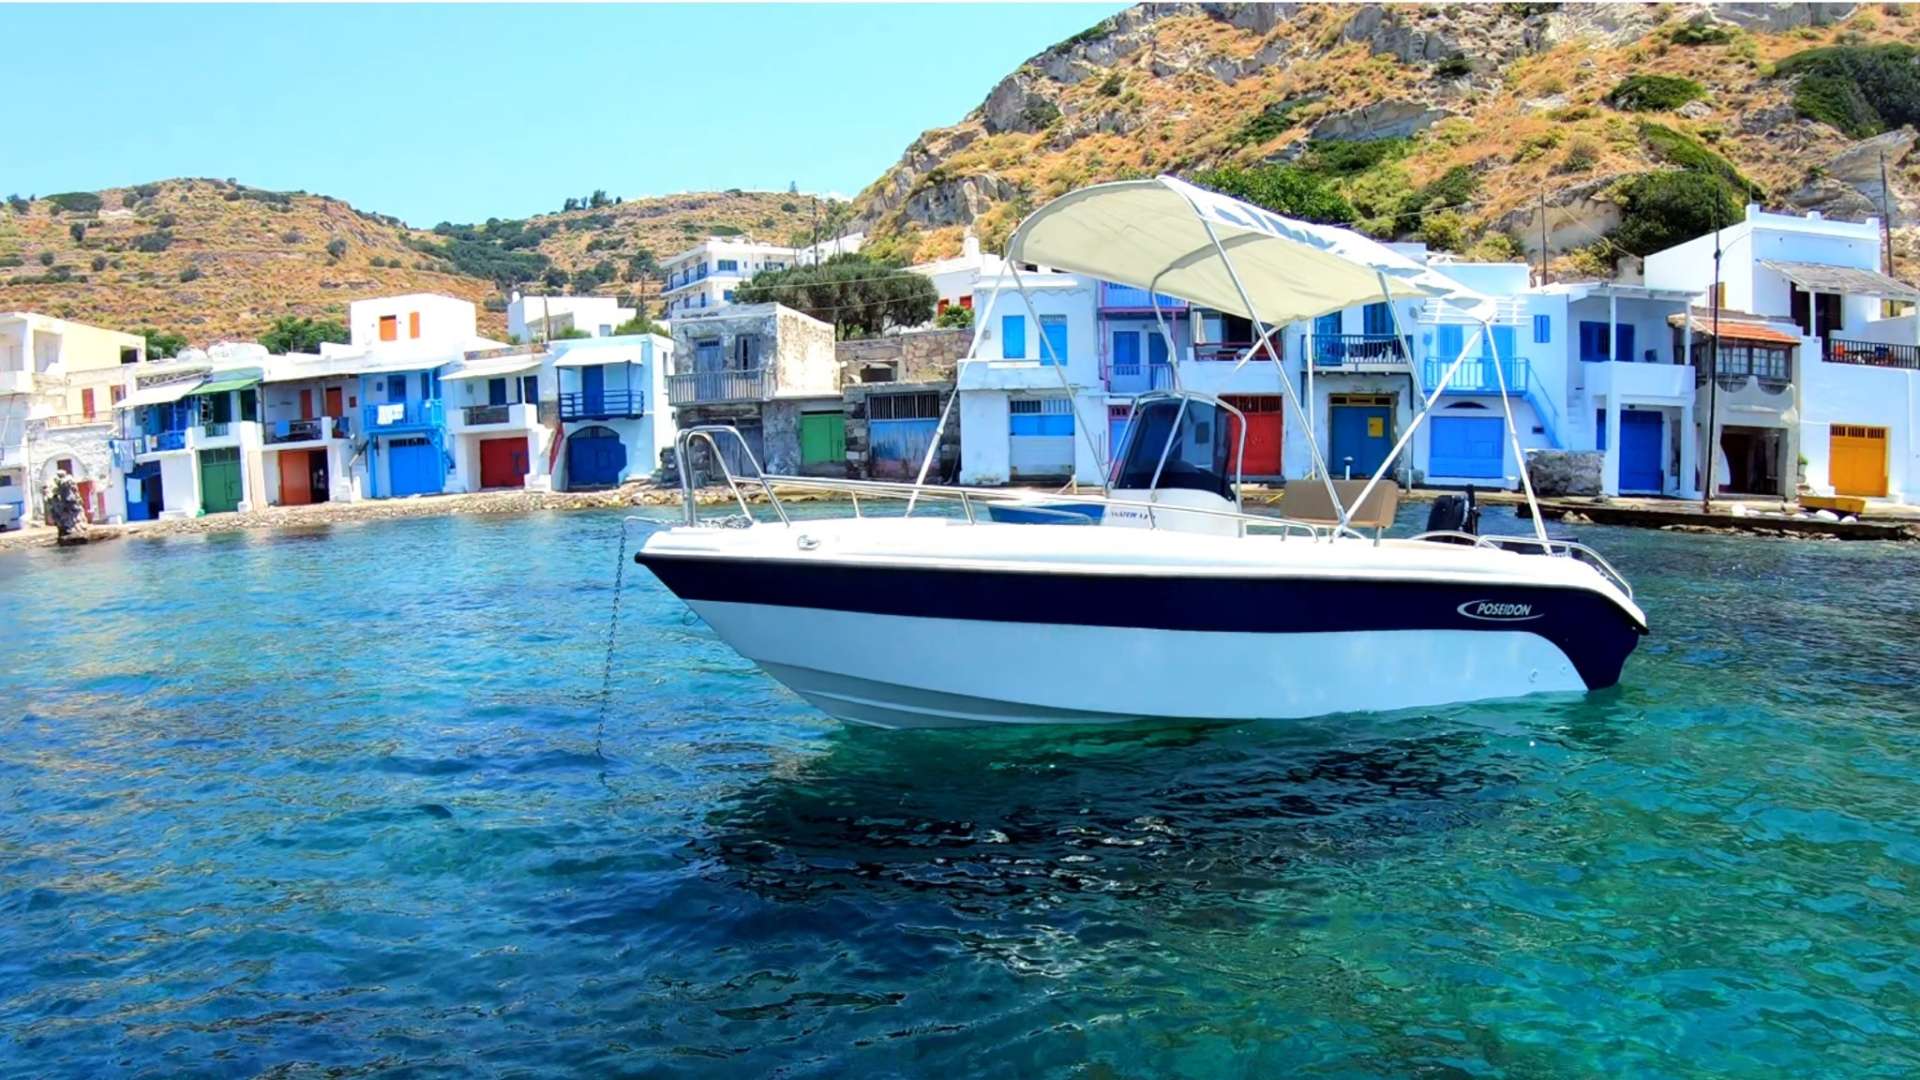 2023 - Motor Boat Charter Greece & Boat hire in Greece Cyclades Islands Paros Paros Paros 4